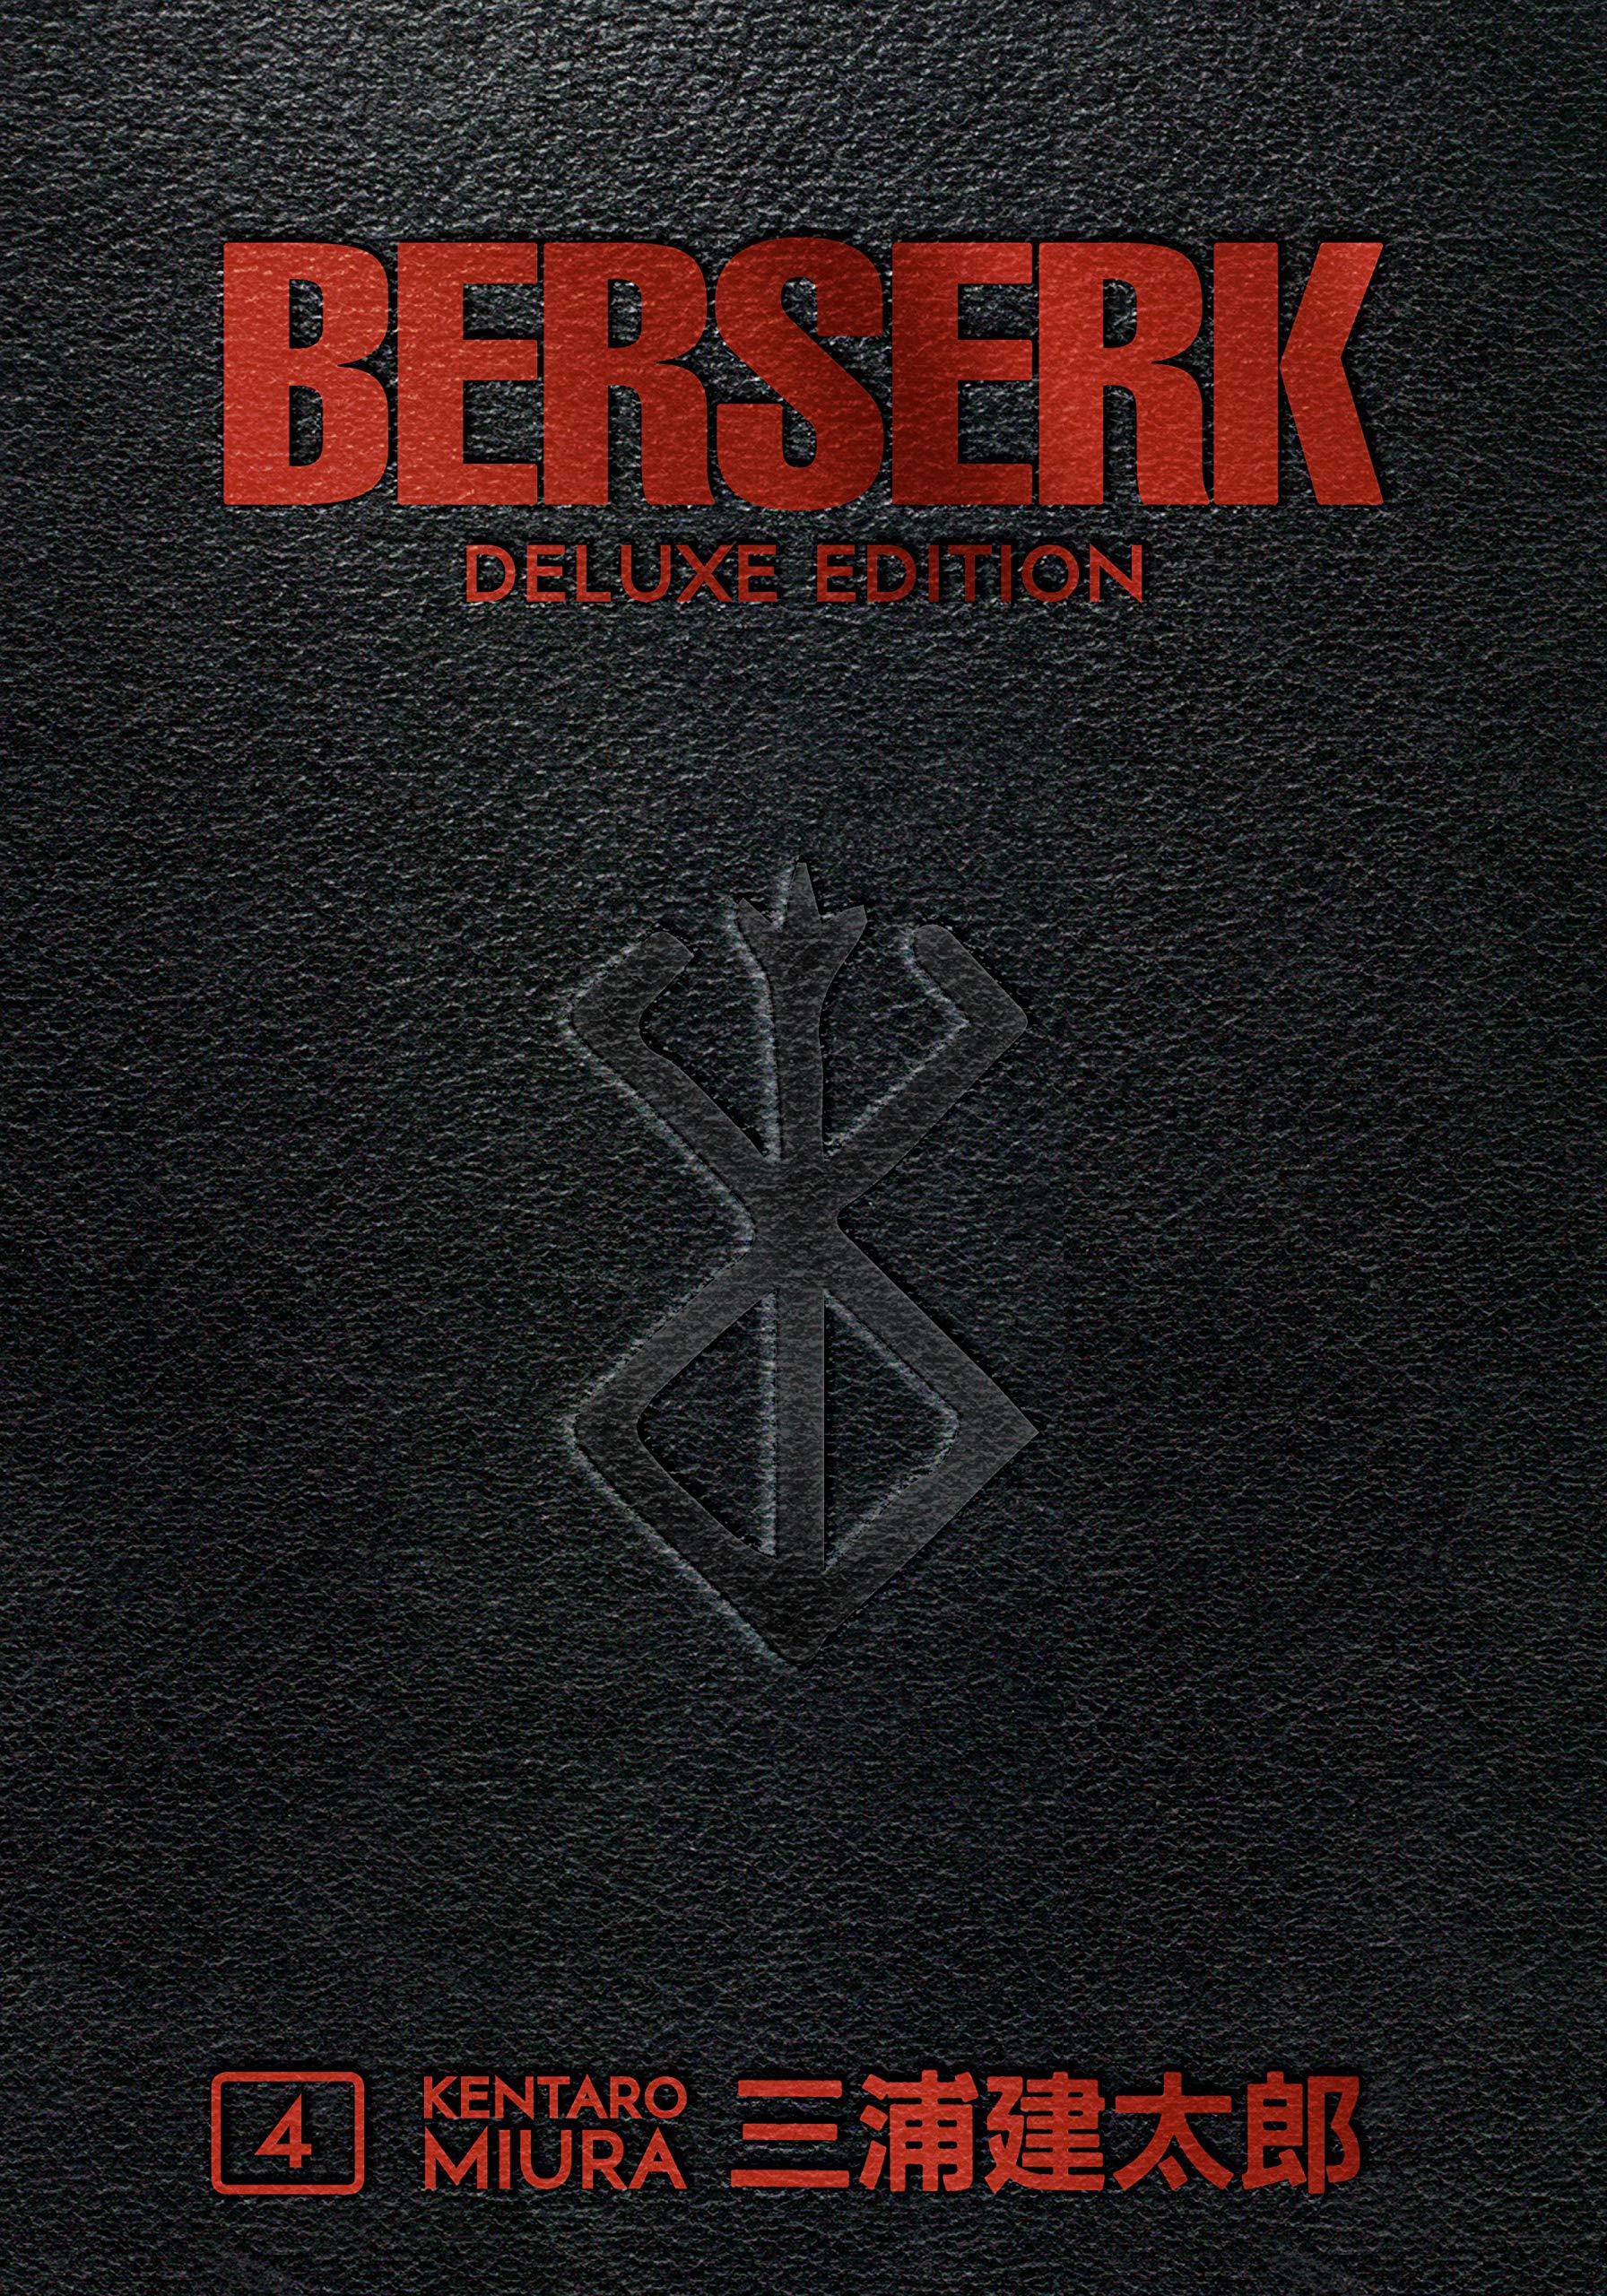 Berserk Deluxe Volume 4 - SureShot Books Publishing LLC